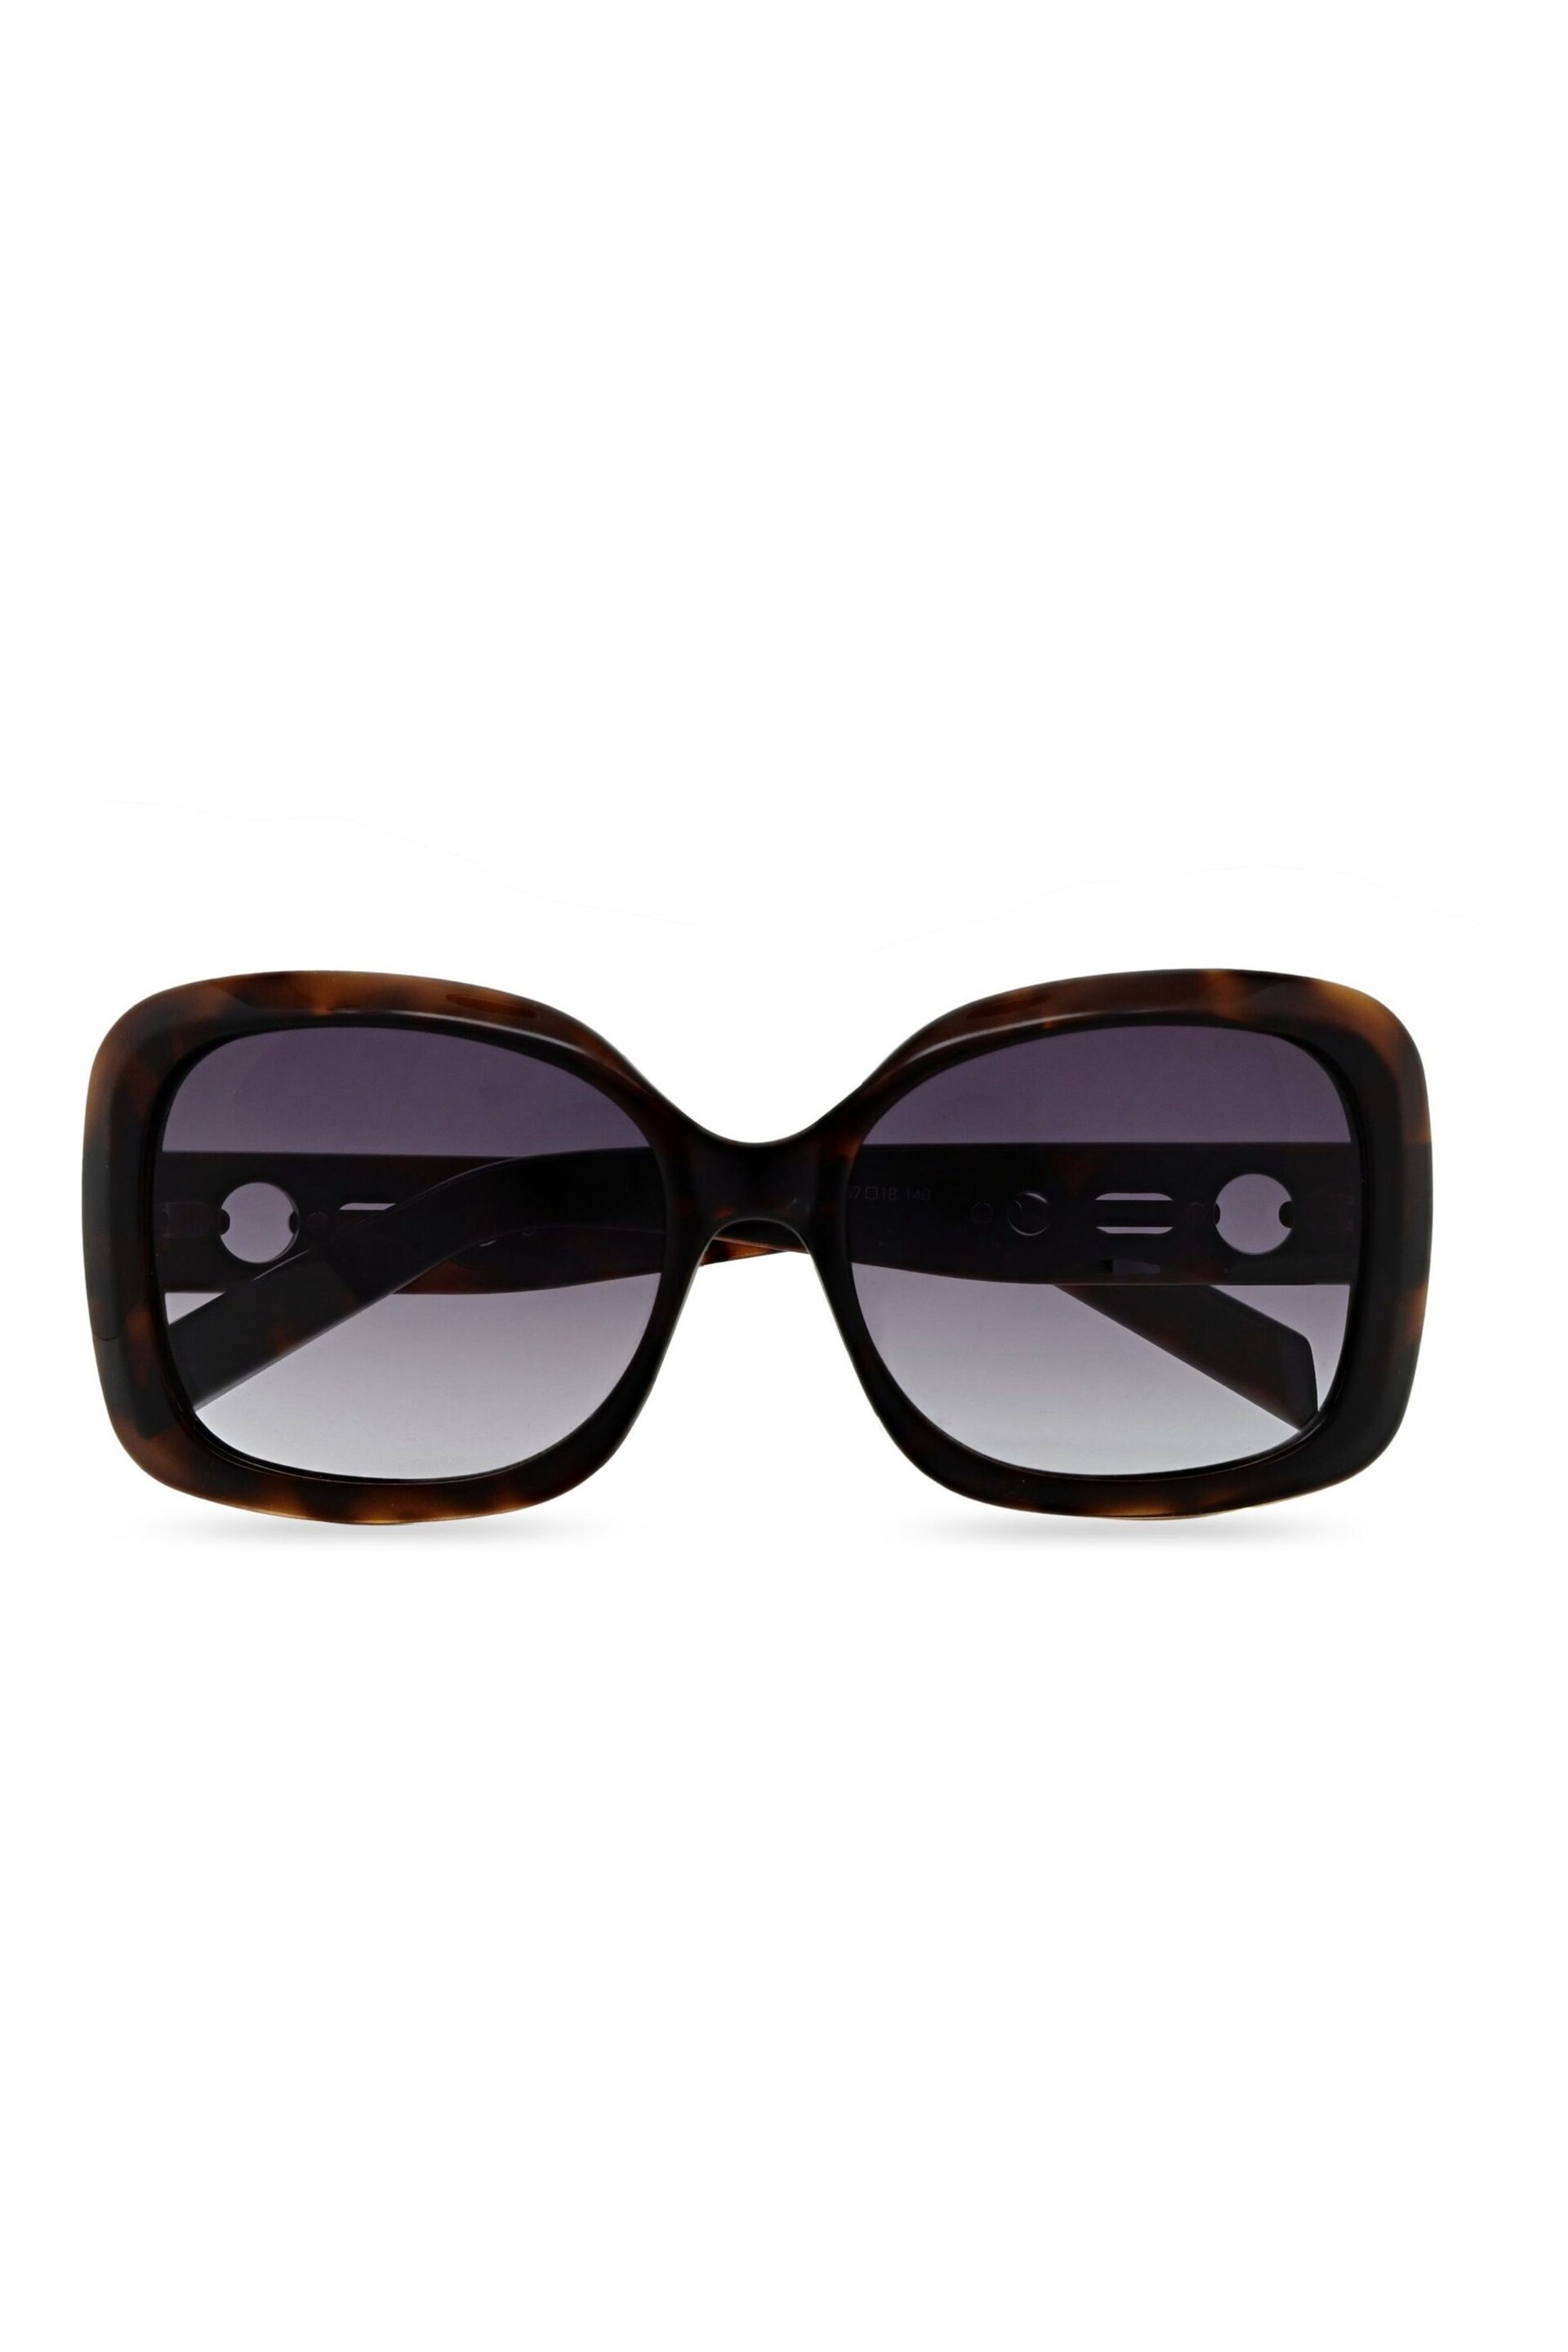 Karen Millen Brown Sunglasses - Image 1 of 5